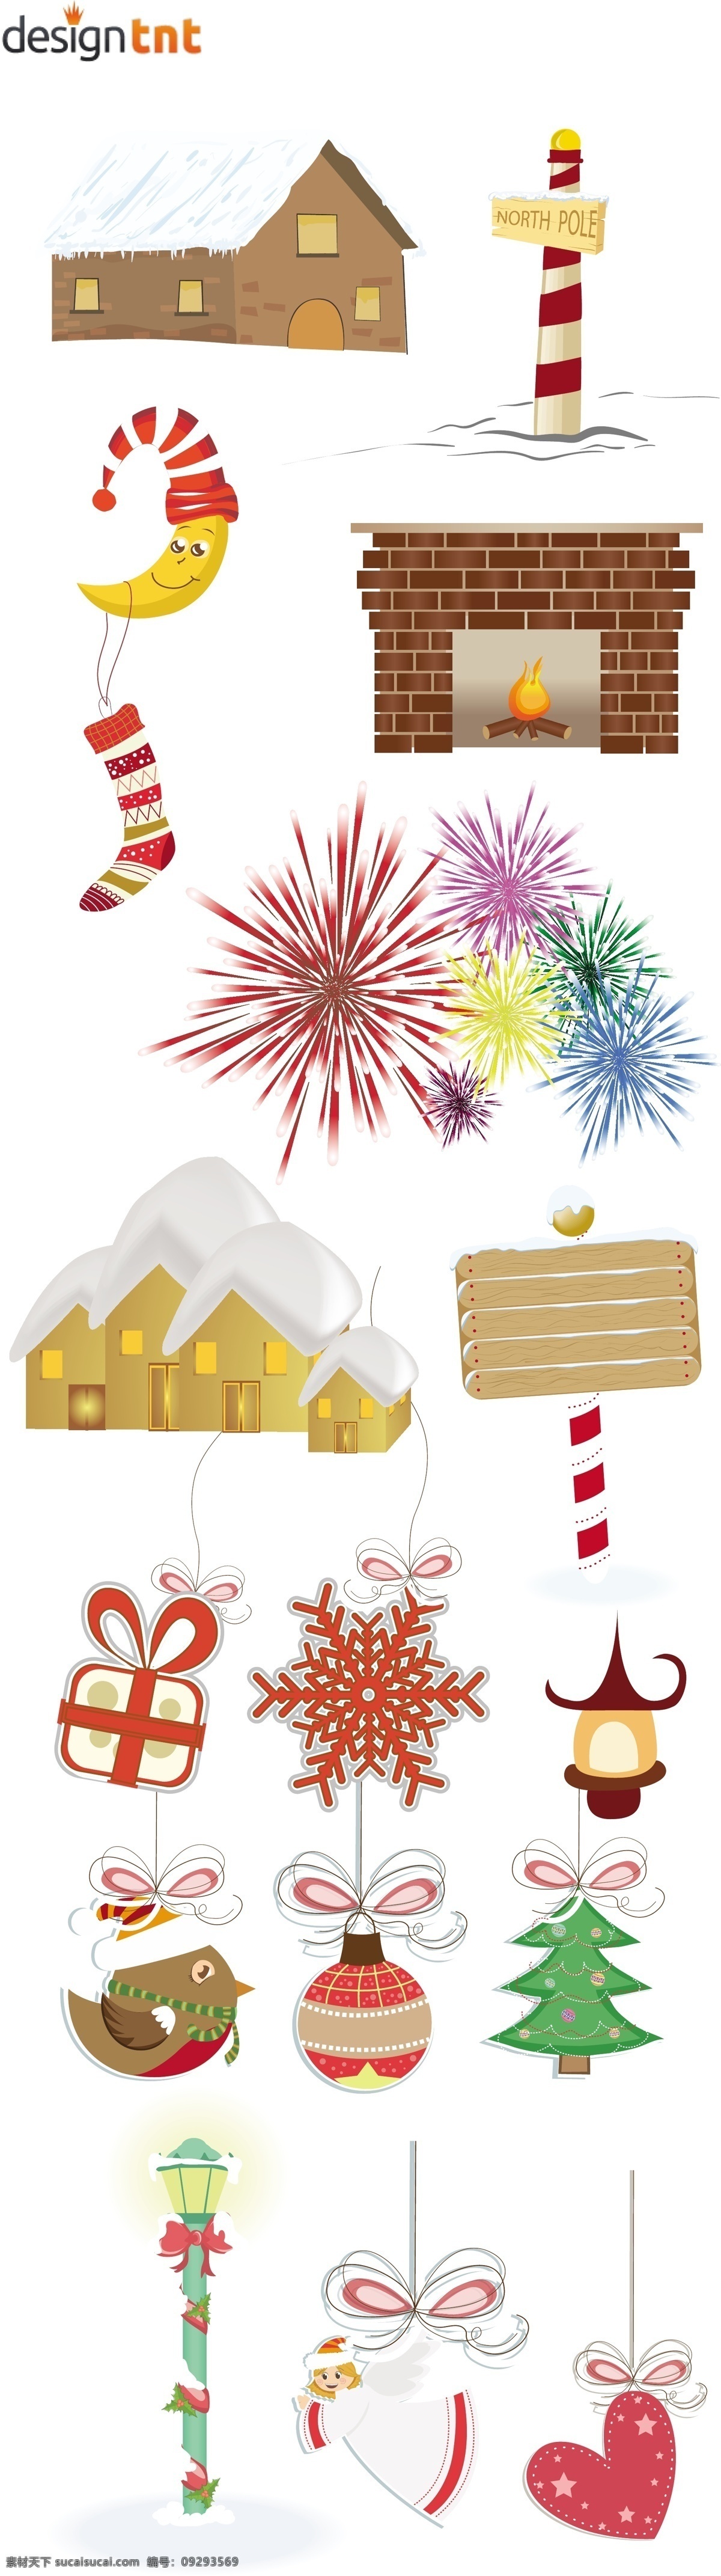 圣诞 装饰 图案 矢量 房子 挂件 火坑 礼物 路标 帽子 圣诞装饰图案 矢量素材 鞋子 雪房子 雪景 烟花 月亮